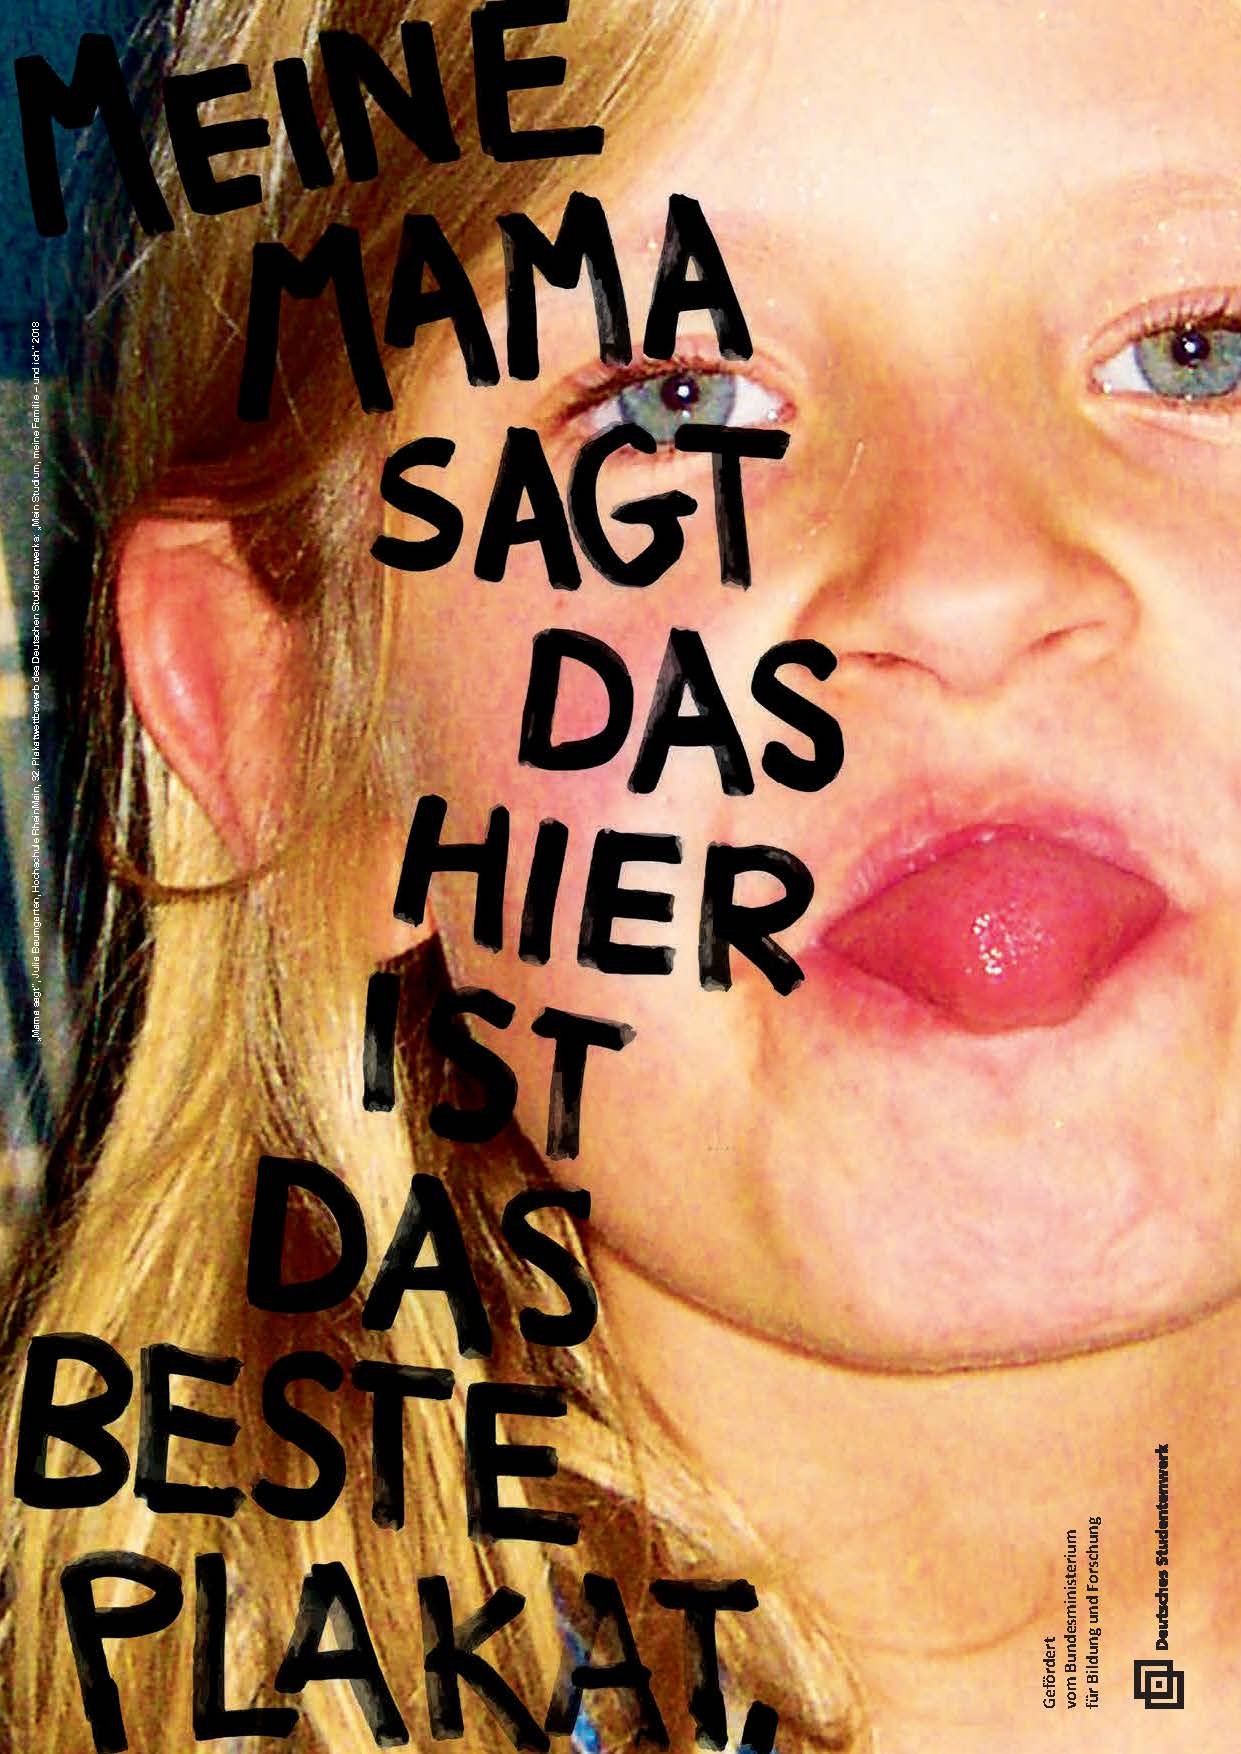 Foto von blondem Mädchen, Gesicht, Totale, streckt die Zunge heraus. Text groß über das Foto, schwarzer Edding: "Meine Mama sagt das hier ist das beste Plakat"